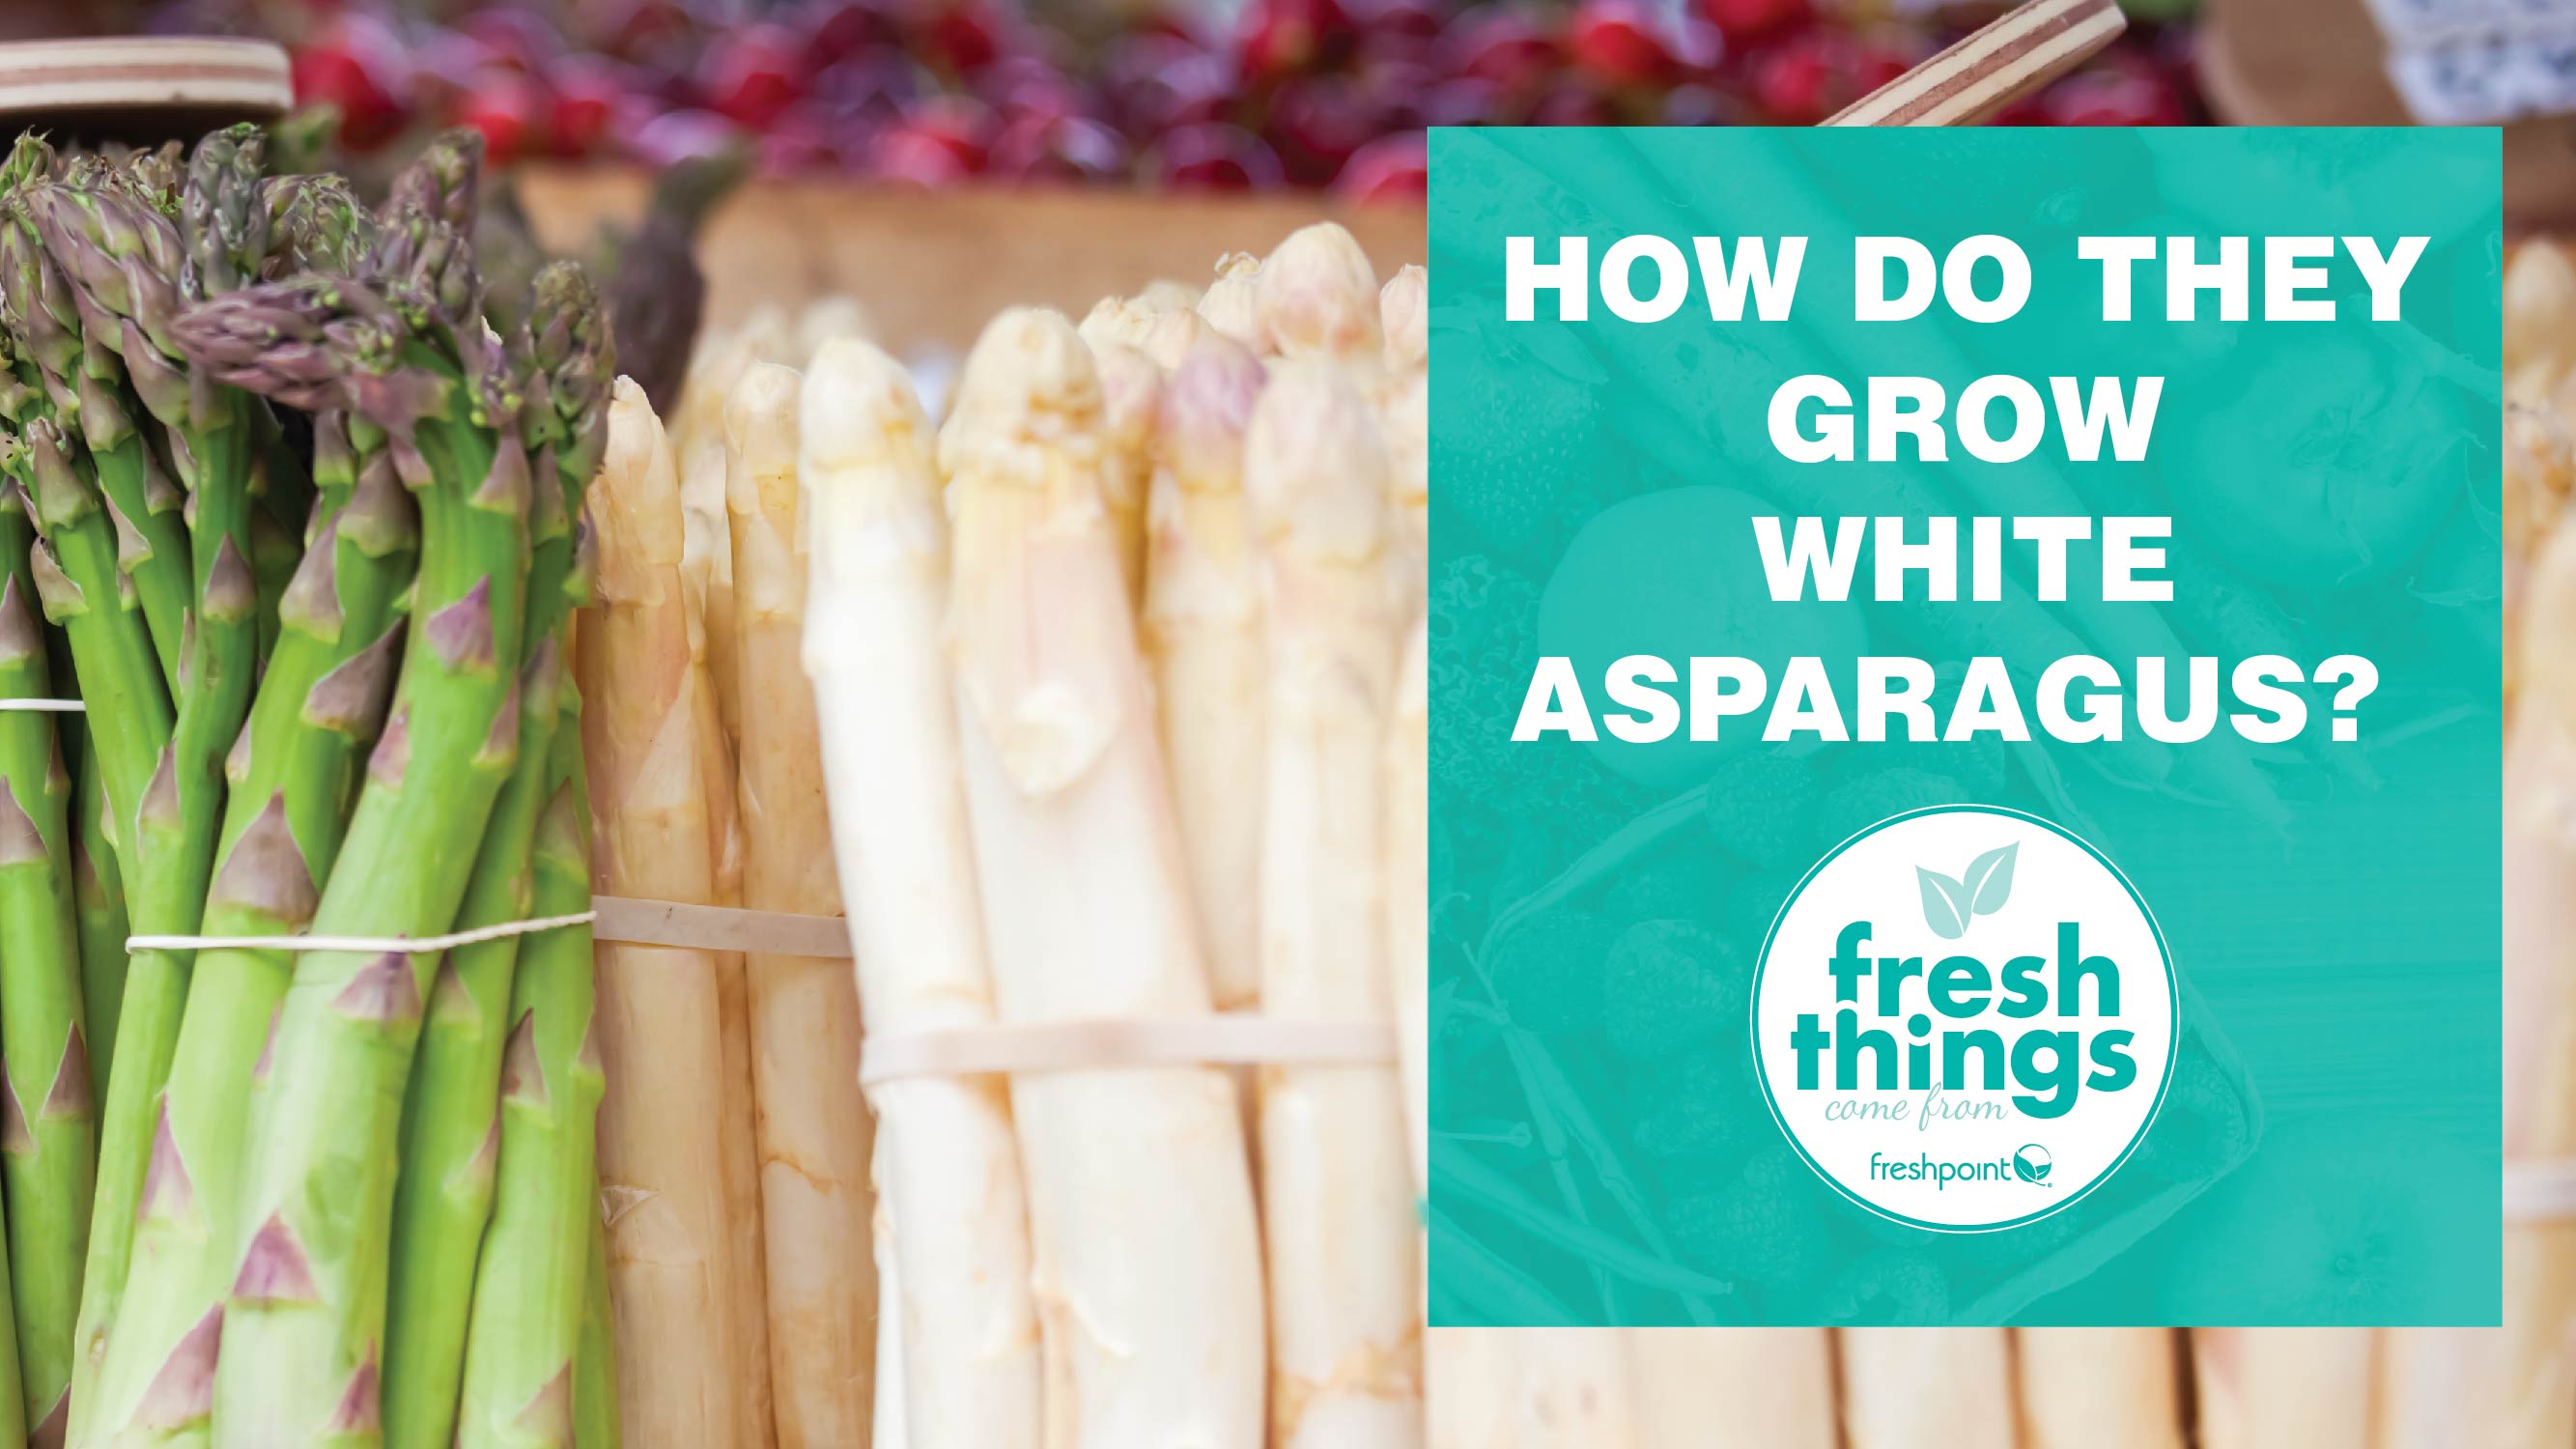 freshpoint-produce-how-do-they-grow-white-asparagus